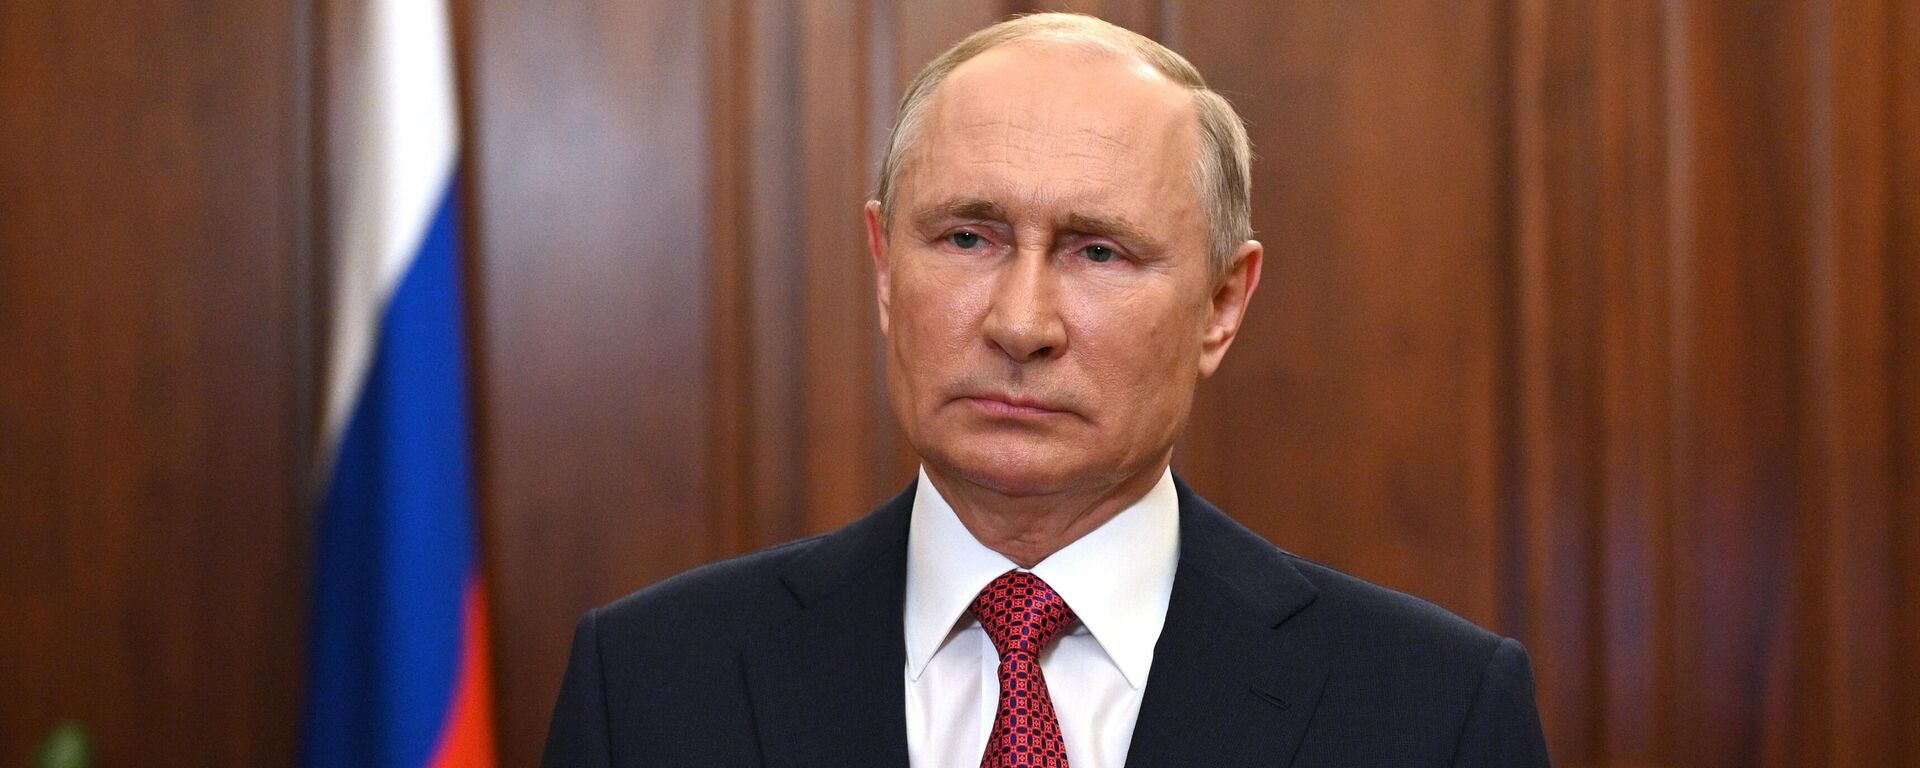 Президент РФ Владимир Путин во время видеообращения - Sputnik Грузия, 1920, 07.10.2021